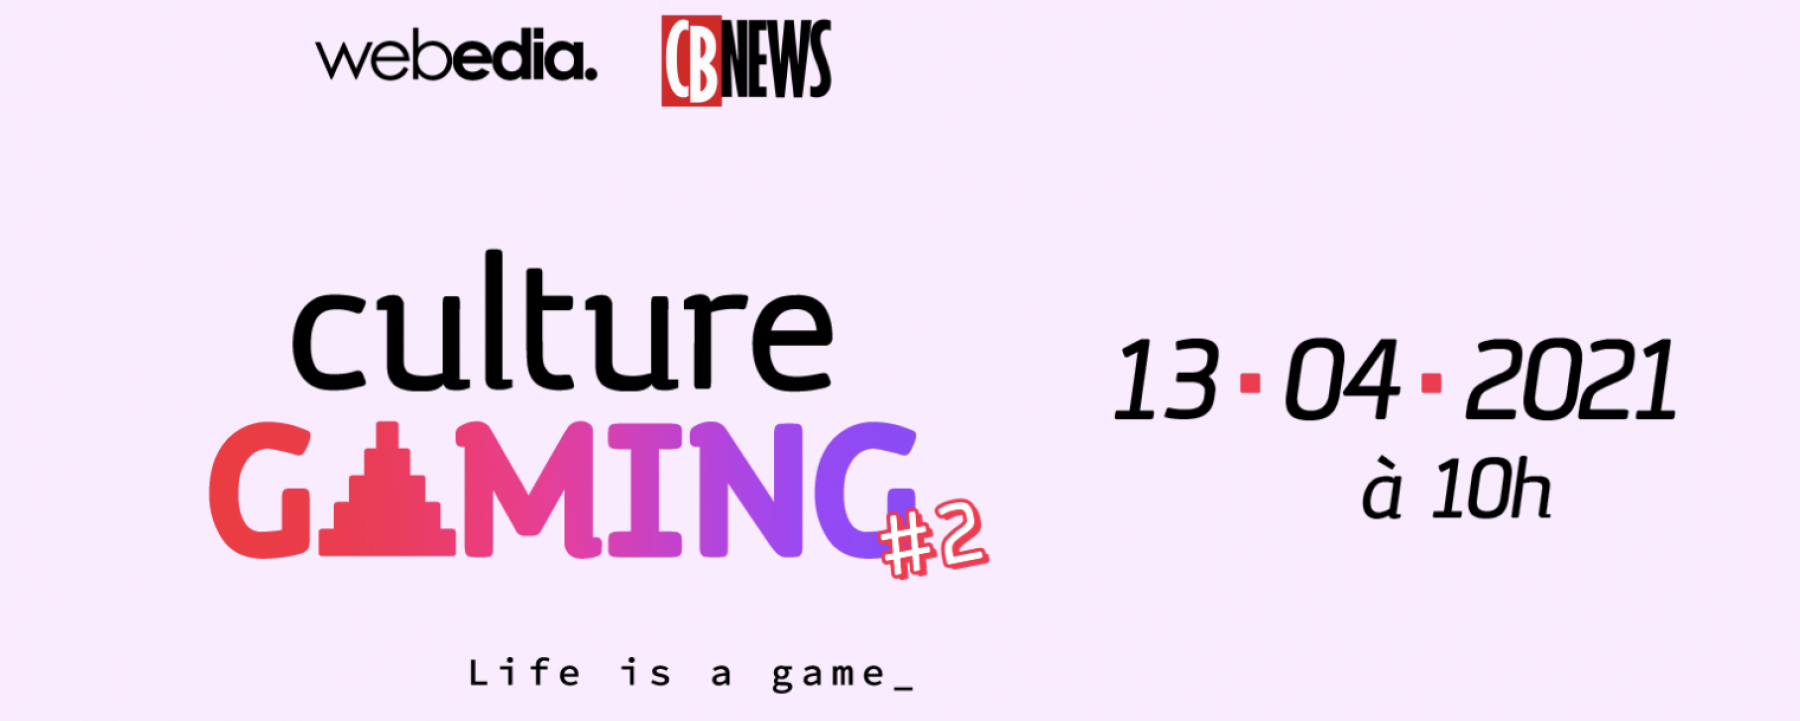 Culture Gaming #2, un événement en ligne organisé par Webedia et CB News le 13 avril 2021